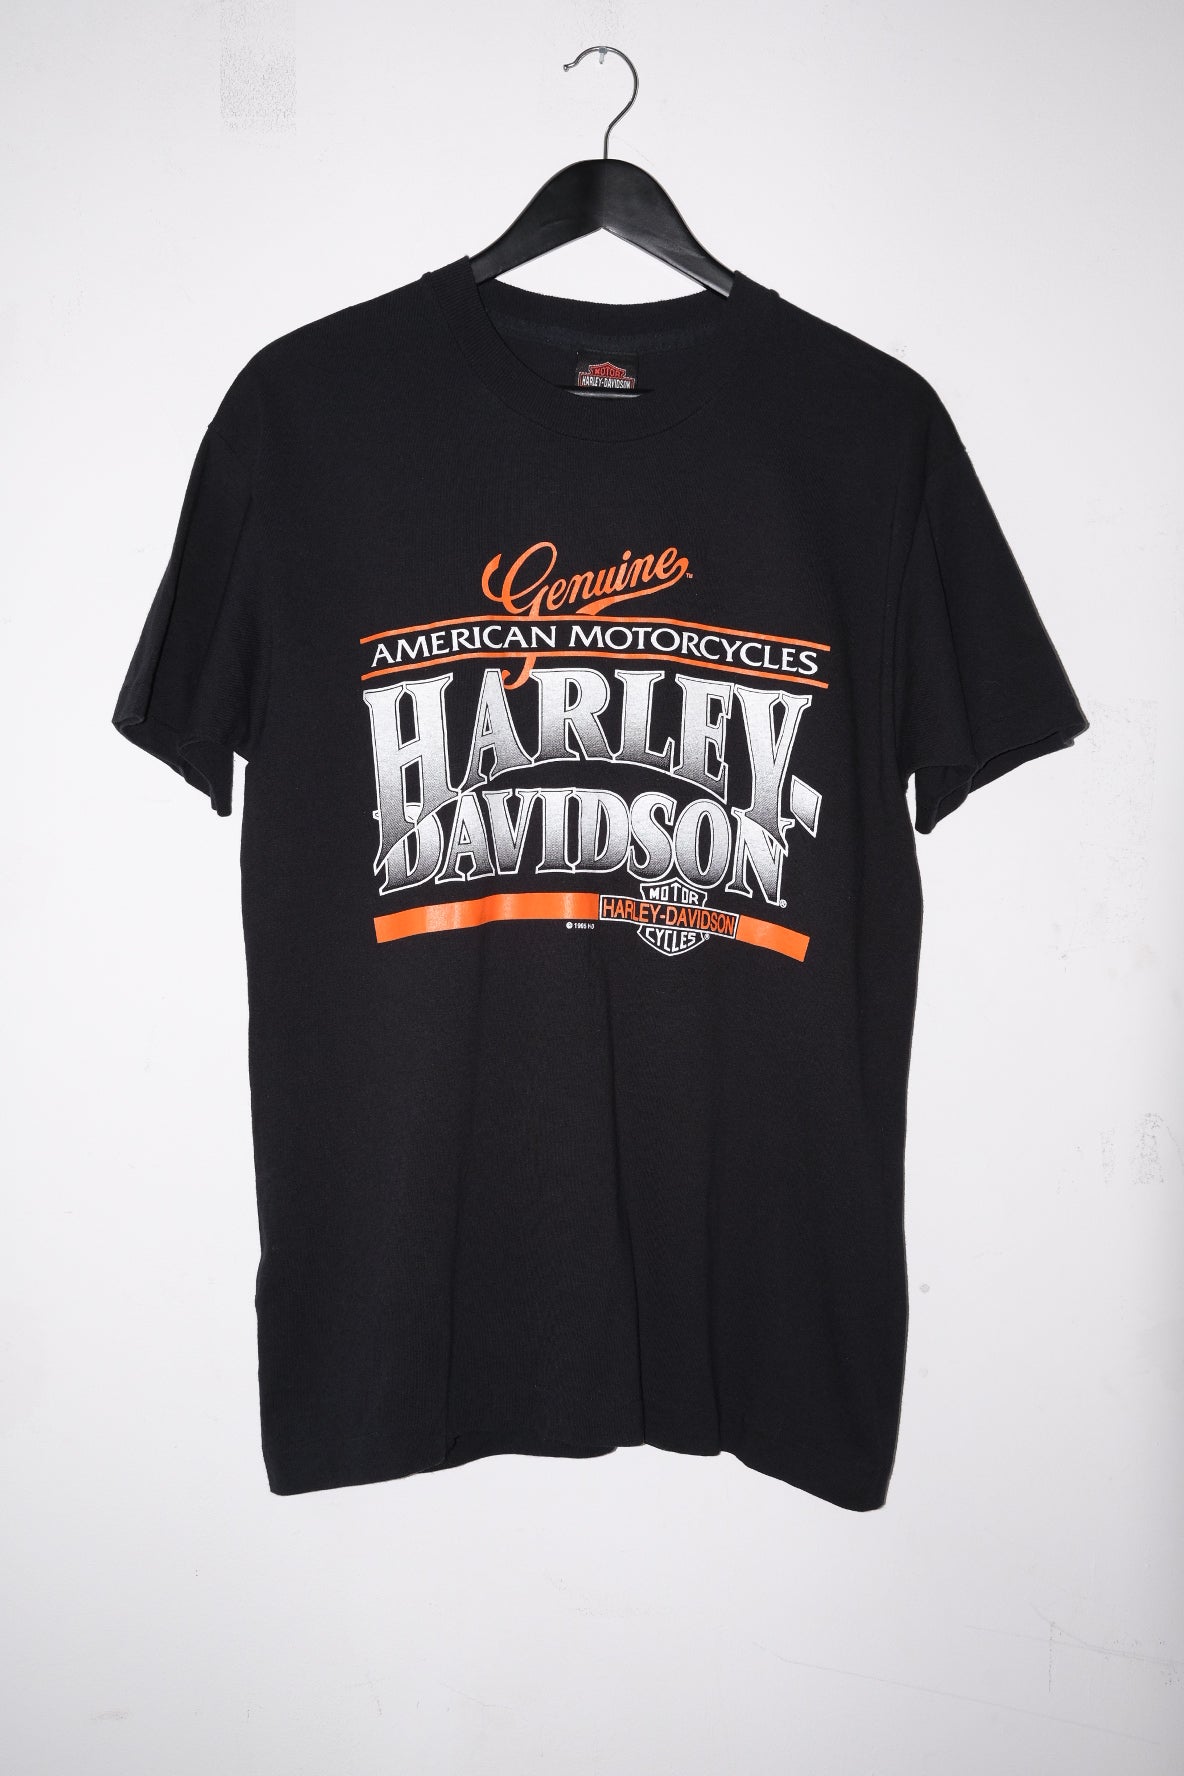 HARLEY DAVIDSON t-shirt